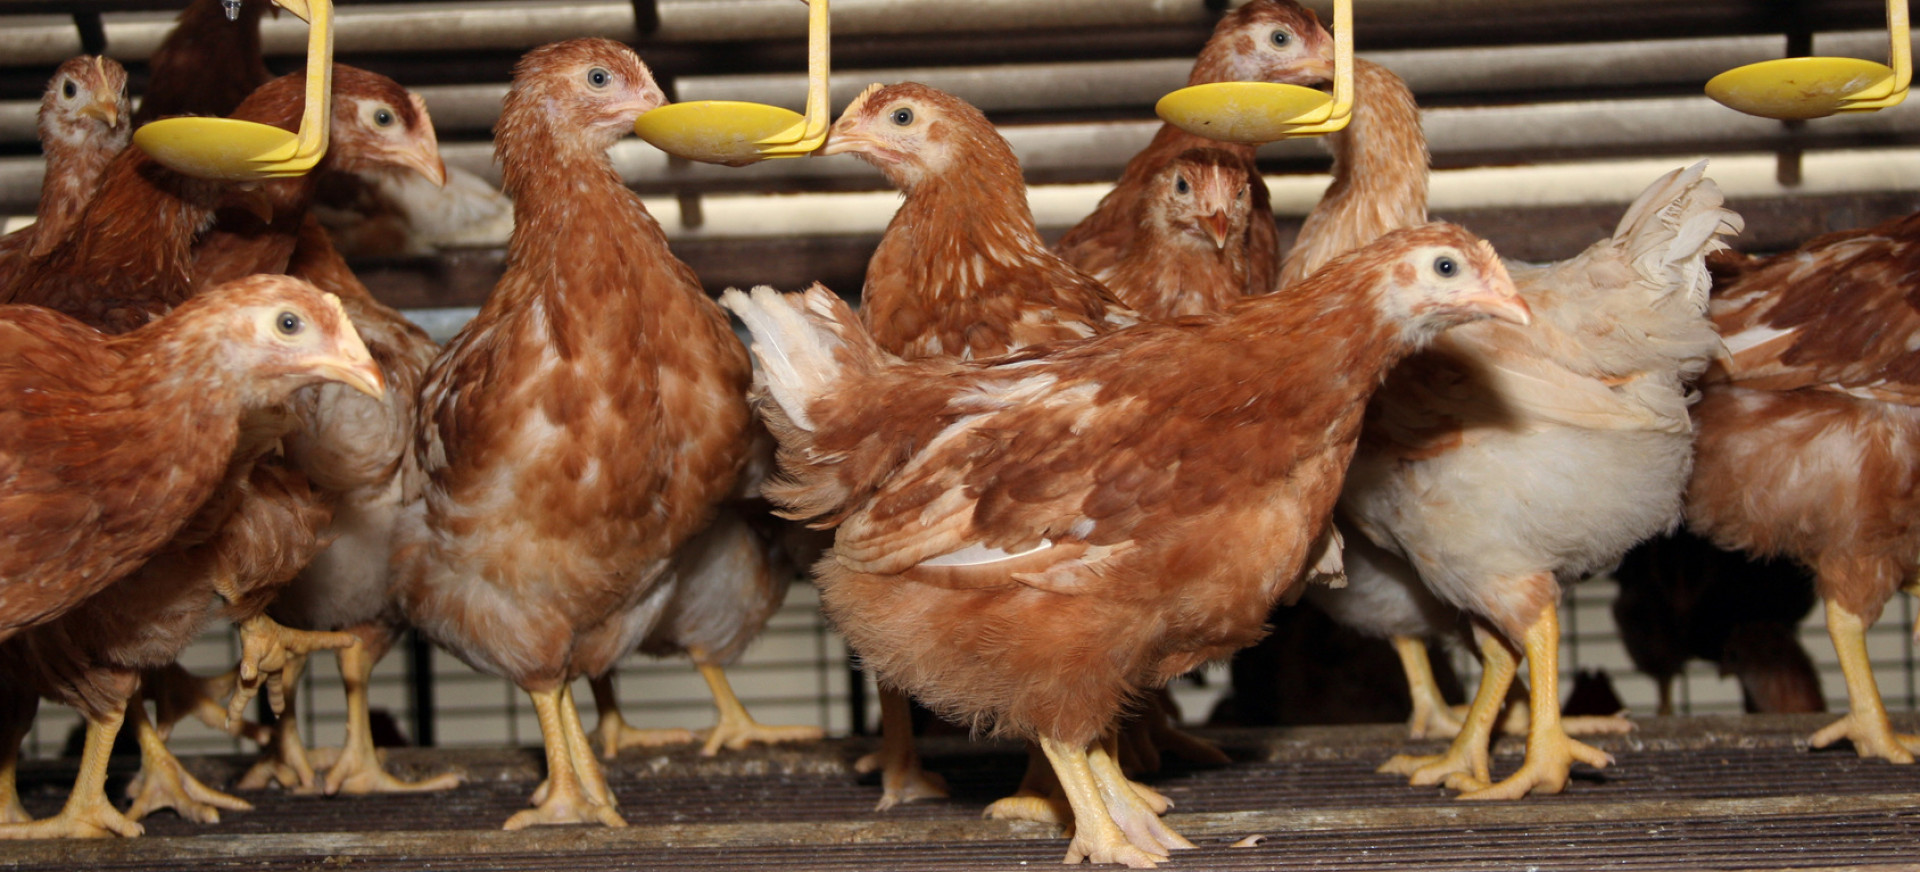 Hühner dicht gedrängt auf einem Metallrost trinken oder essen aus Vorrichtungen